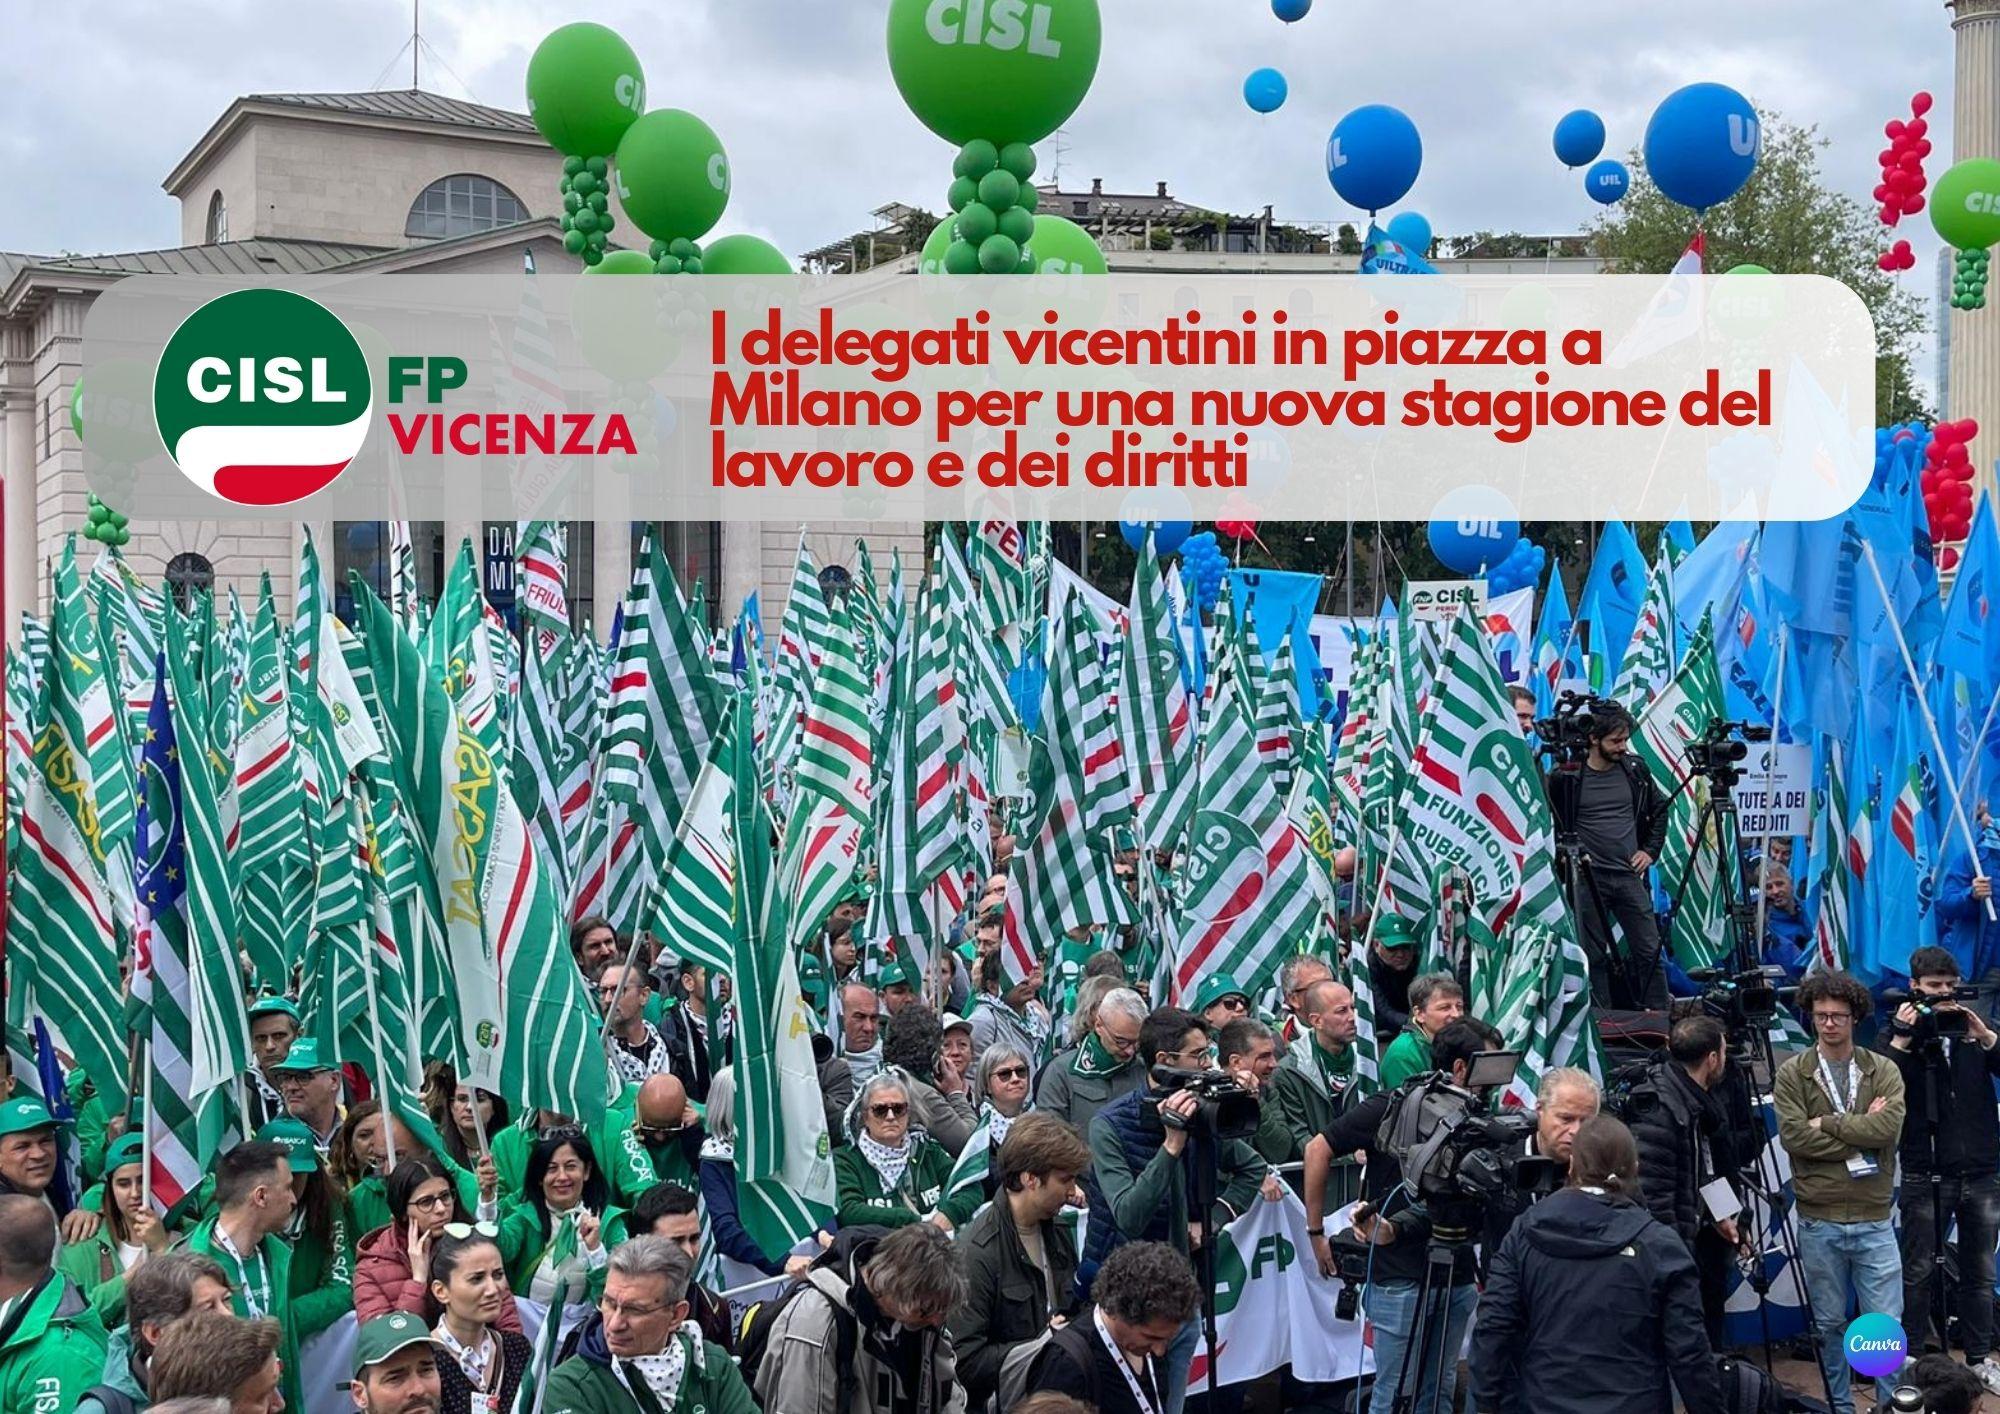 CISL FP Vicenza. I delegati vicentini in piazza a Milano per una nuova stagione del lavoro e dei diritti